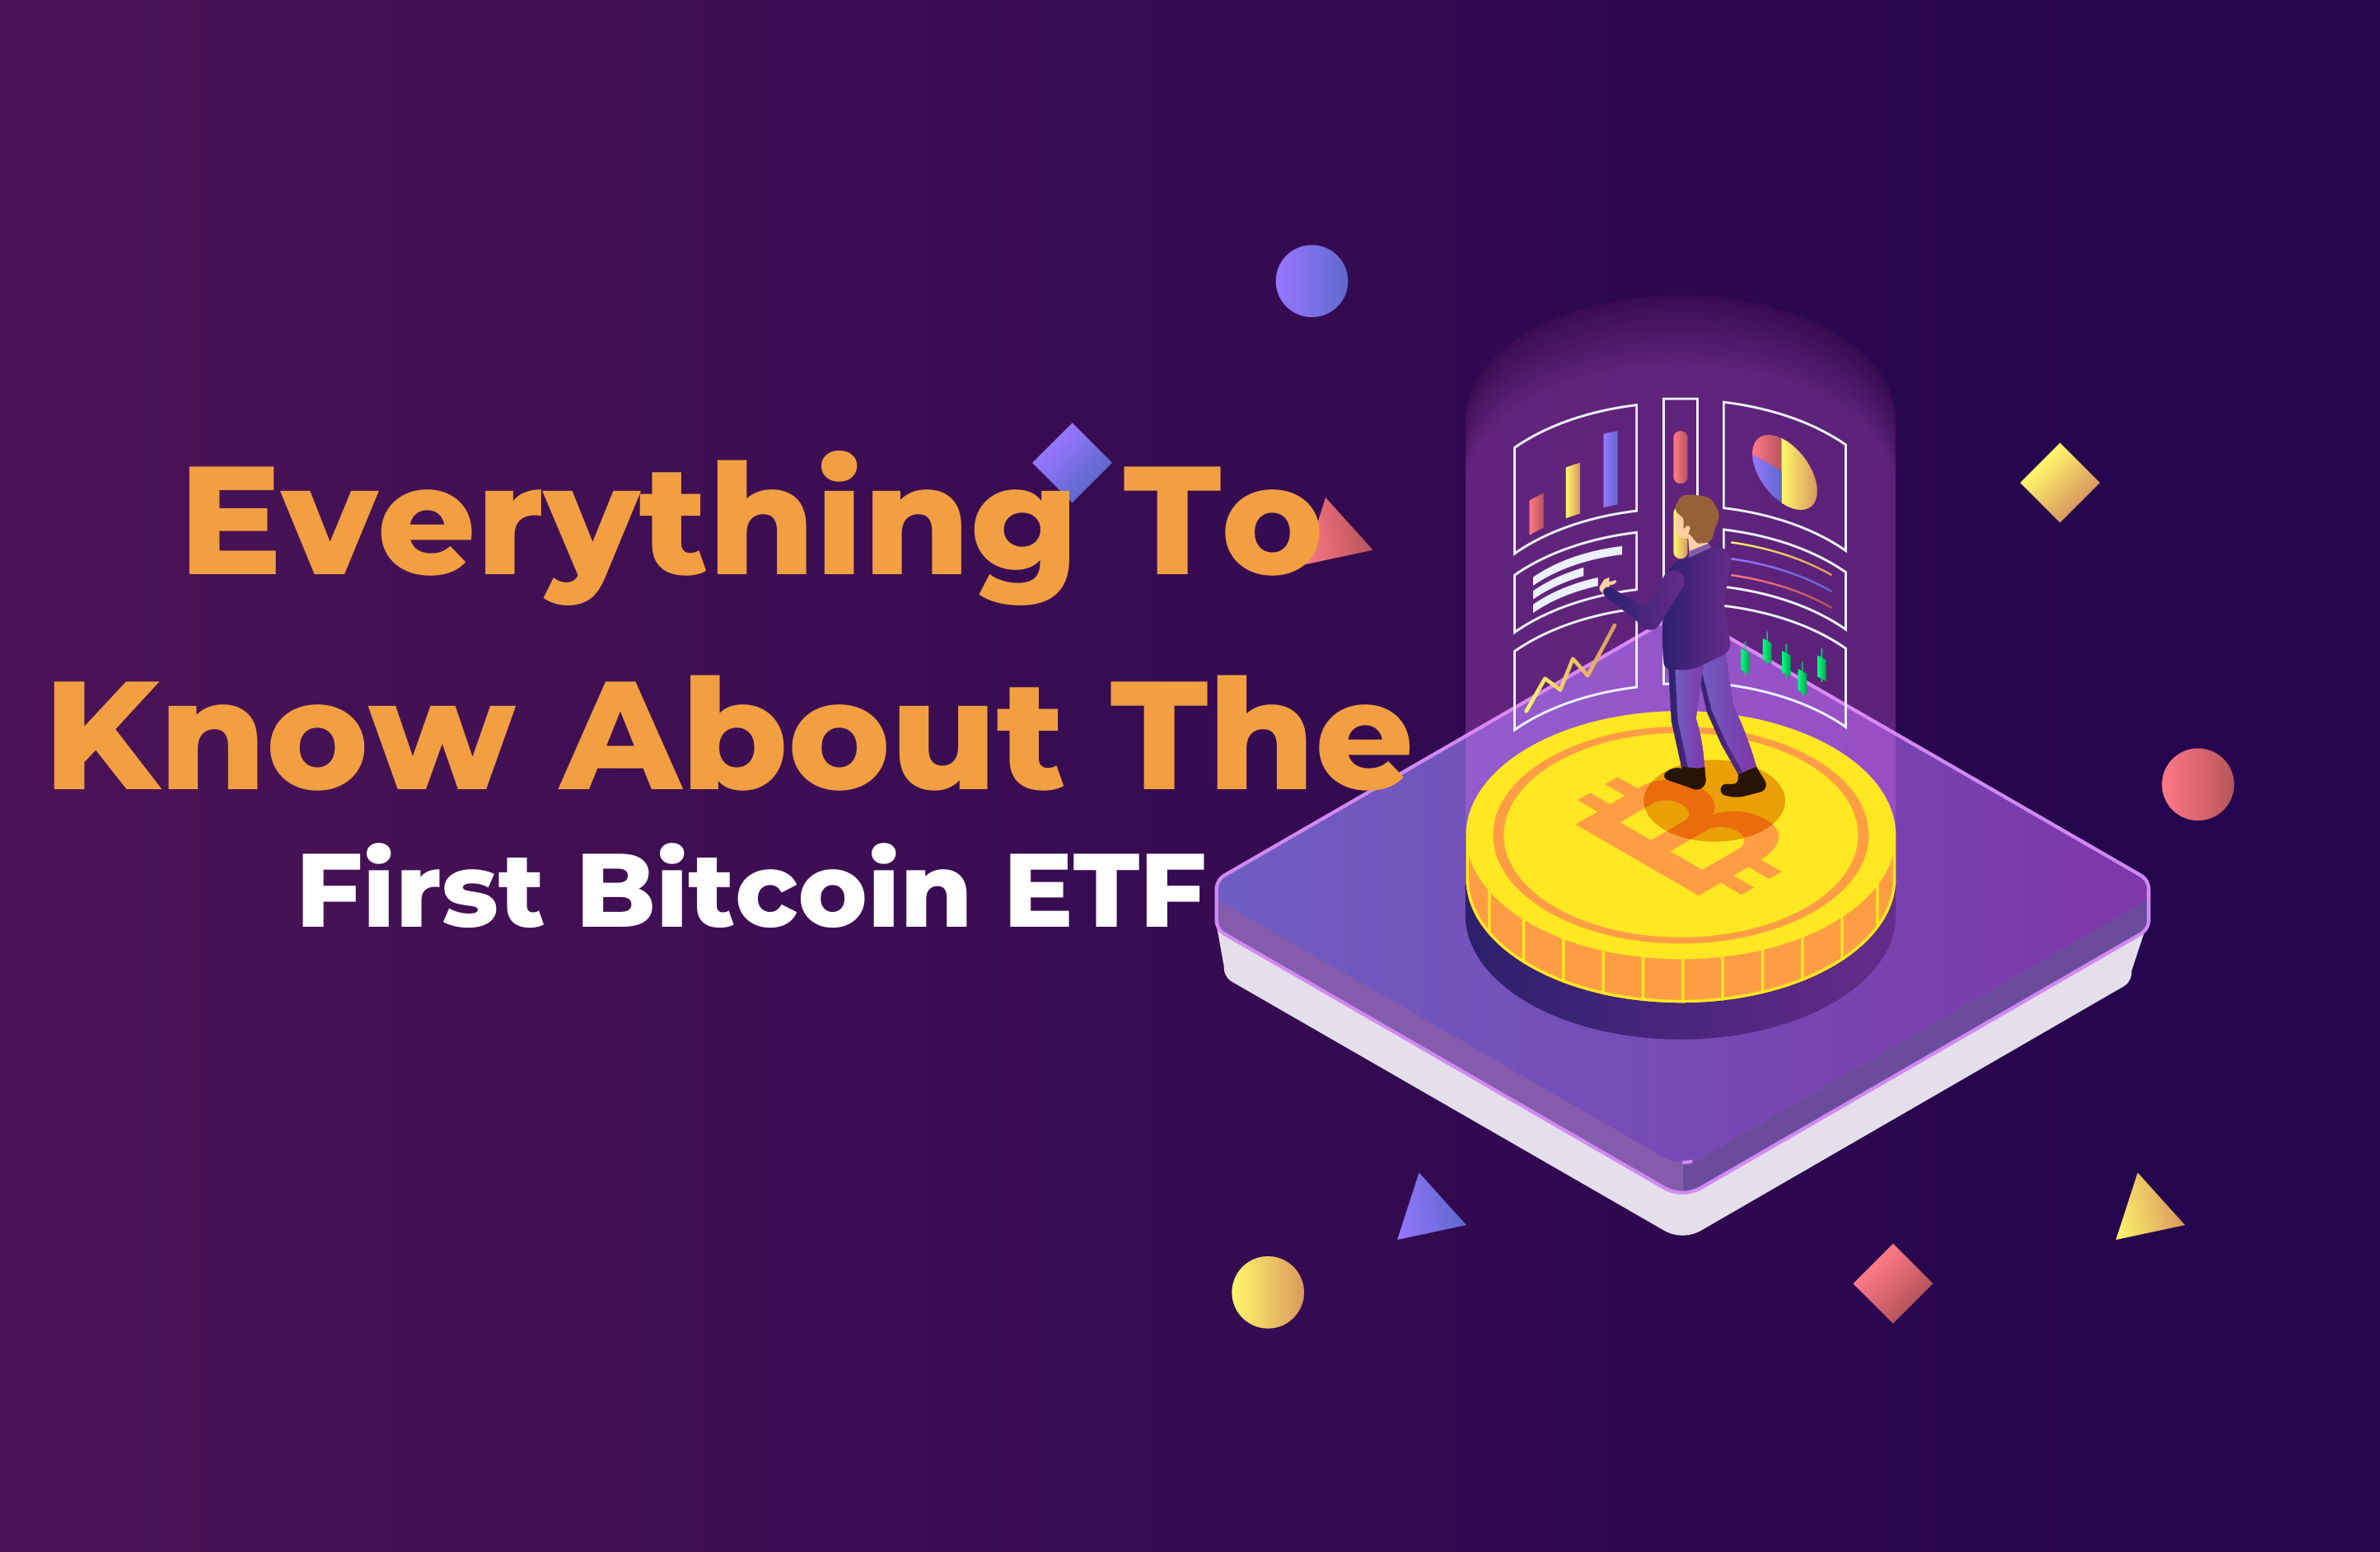 First Bitcoin ETF